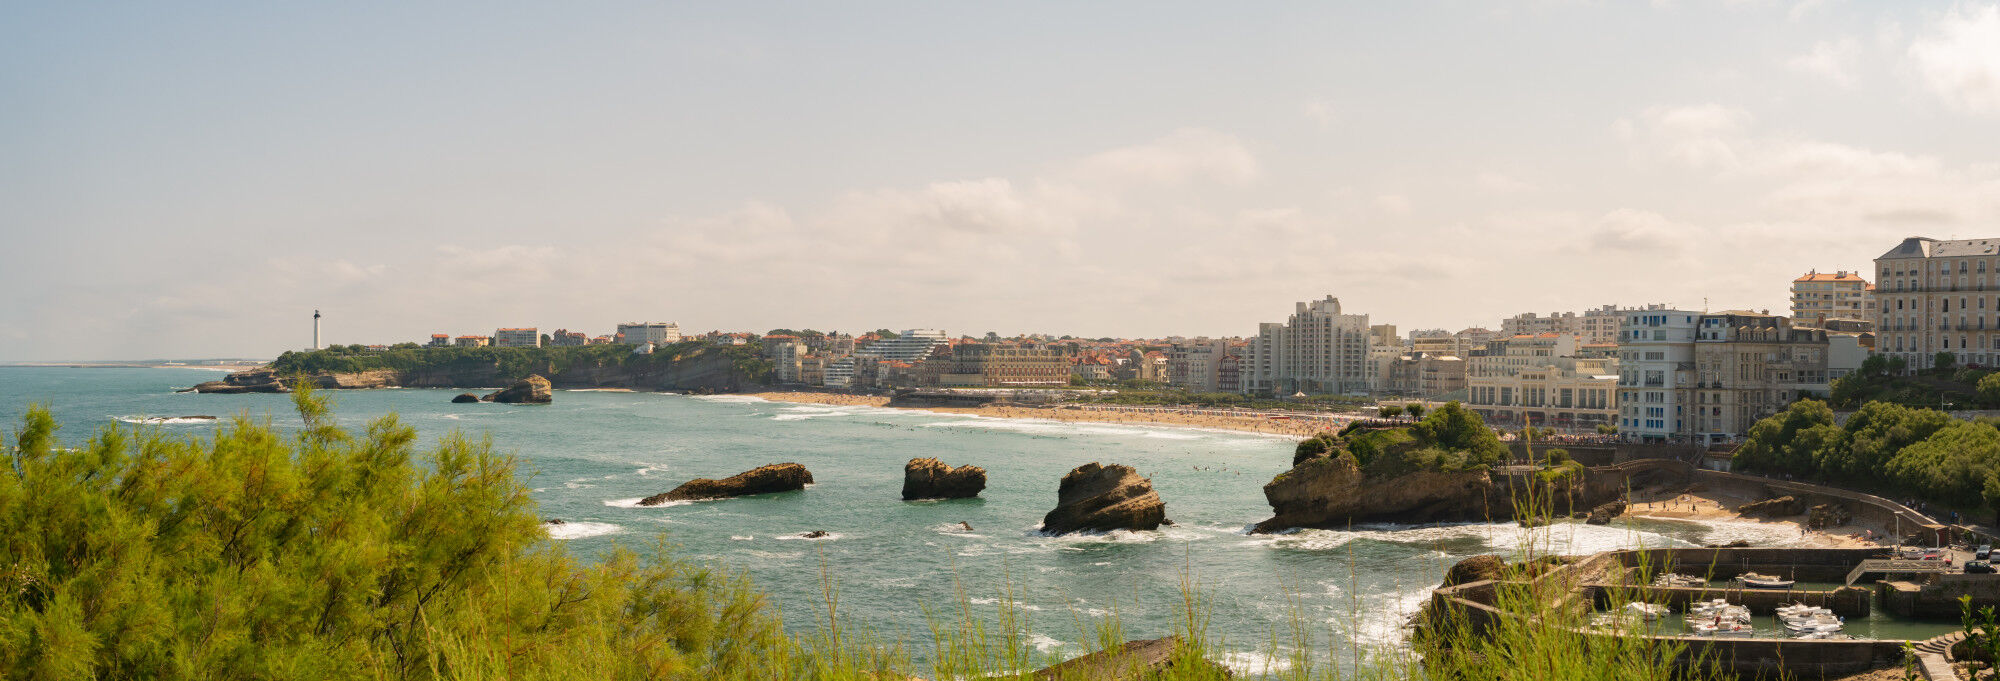 Panoramique de Biarritz, France - Pays Basque, France & Espagne